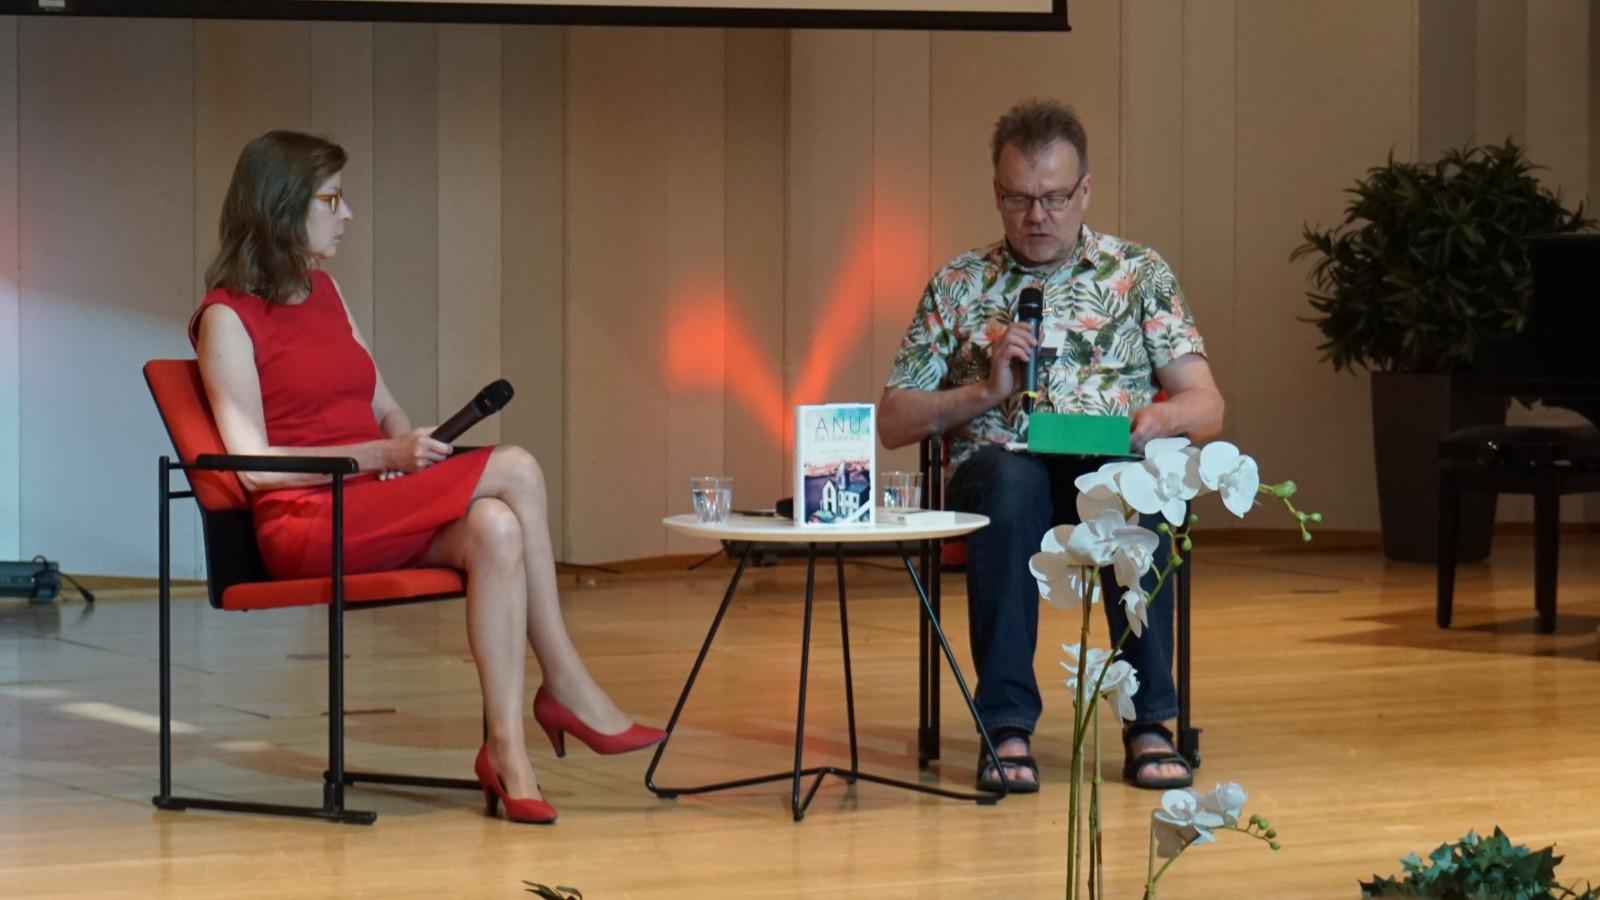 Kuvassa on Anu Patrakka punaisessa puvussa haastateltana ja haastattelijana Pasi Luuhtaniemi kirjavassa paidassa.